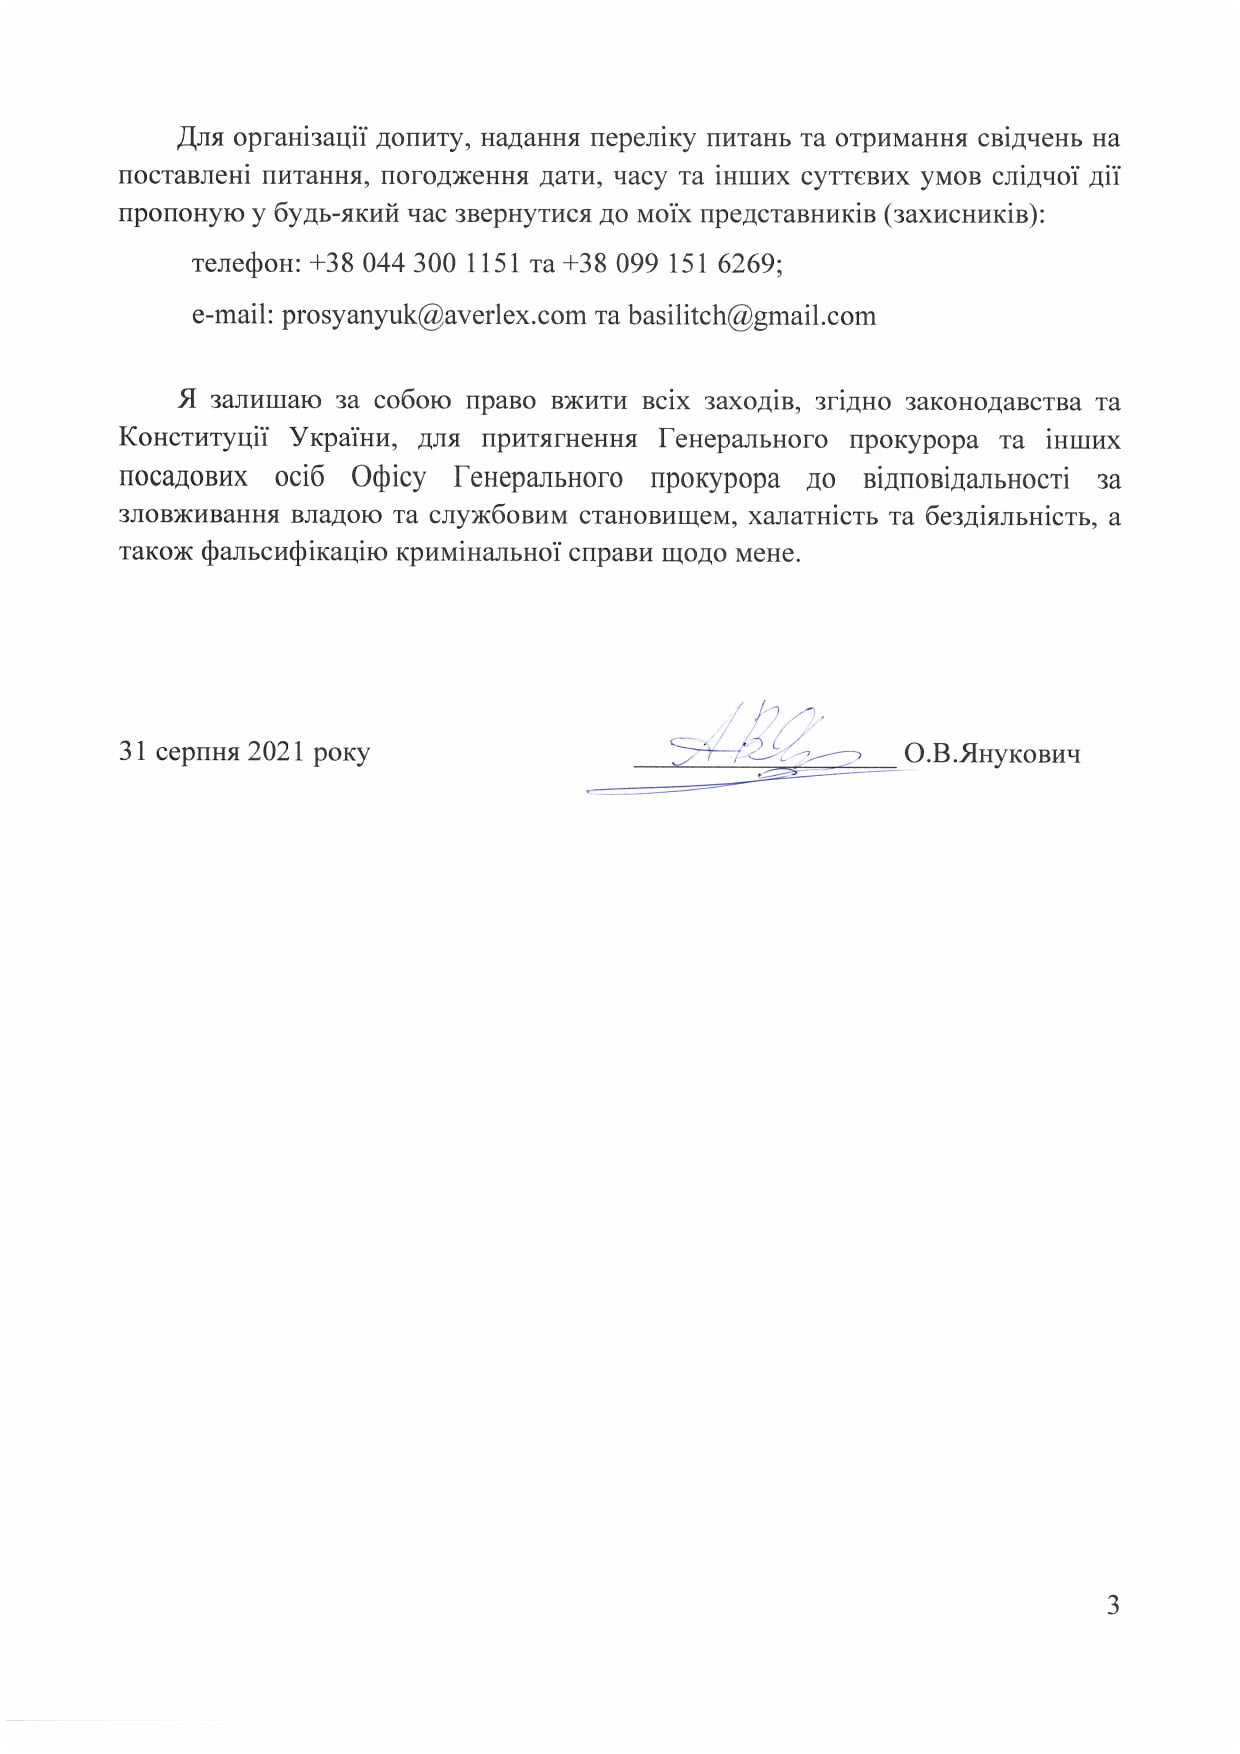 Ходатайство Януковича в Офис Генпрокурора